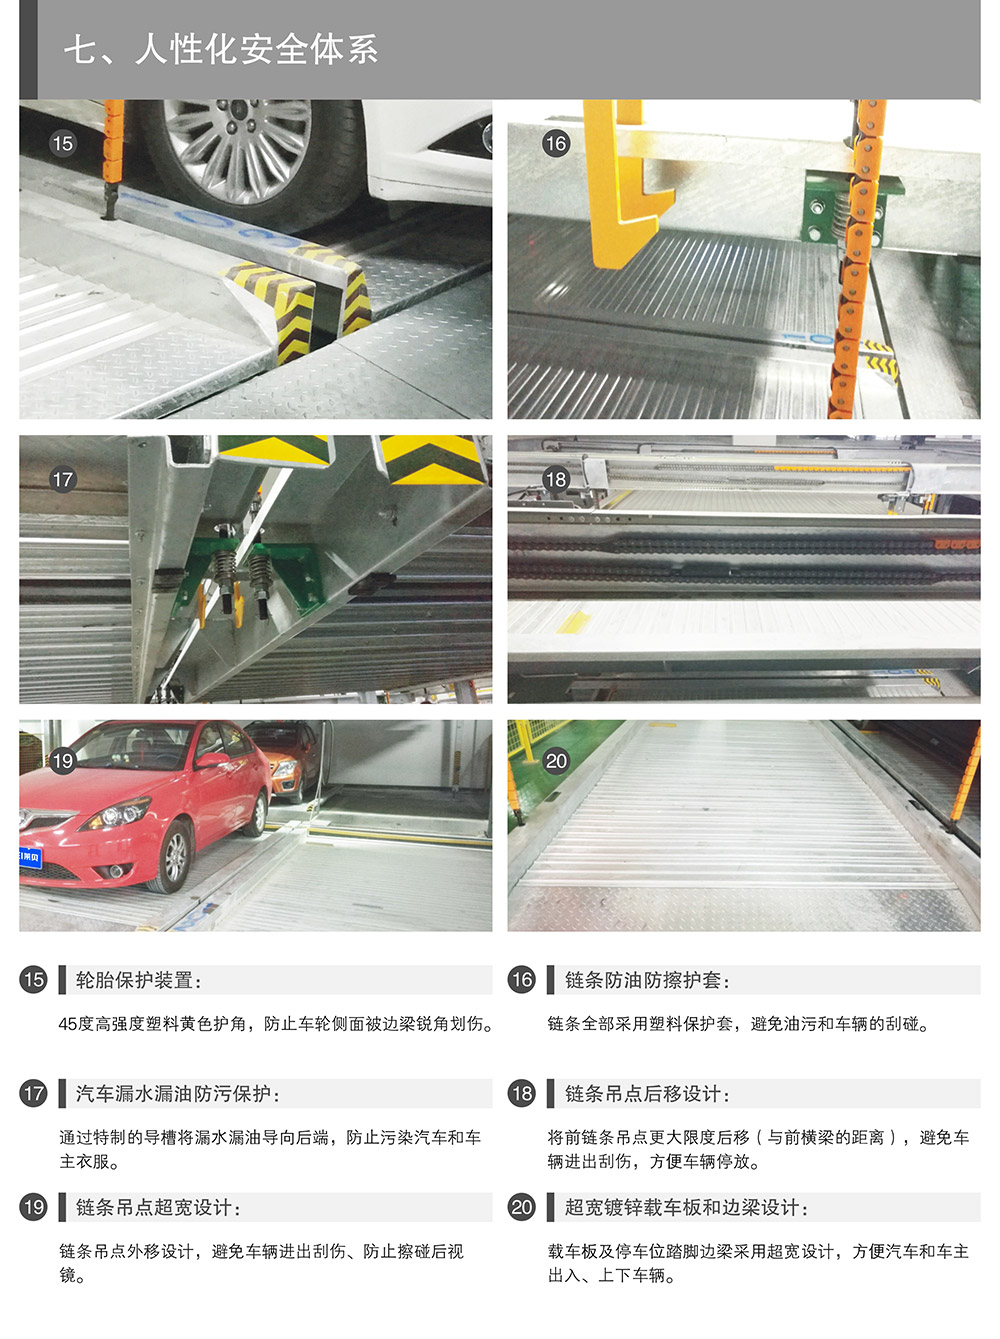 四川成都重列PSH2二层升降横移立体停车设备人性化安全体系.jpg